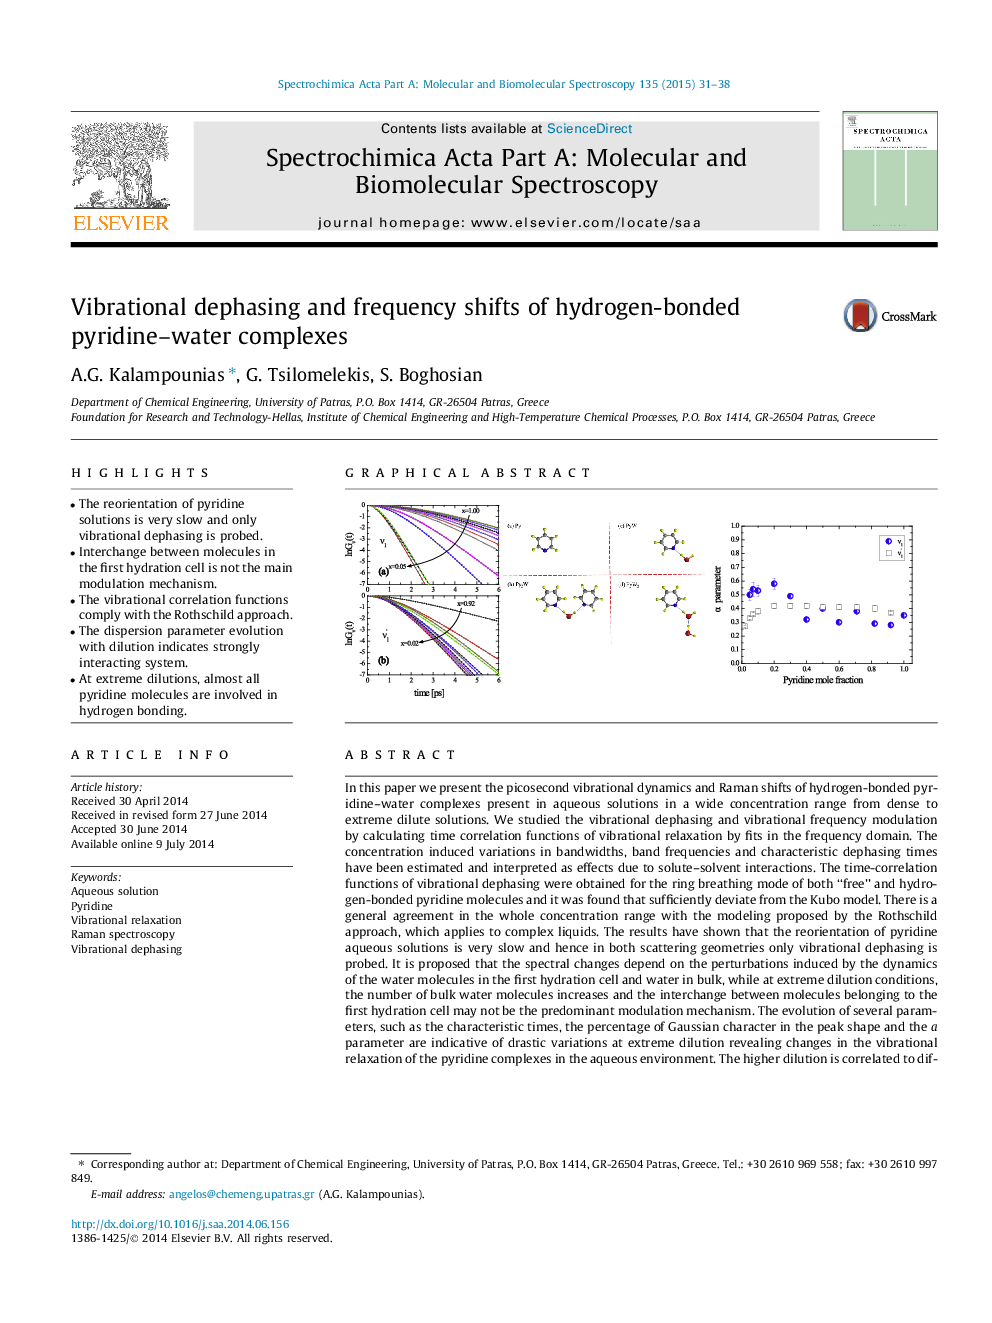 تغییرات فرکانس و فرکانس ارتعاشی از ترکیبات هیدروژن پییریدینا 